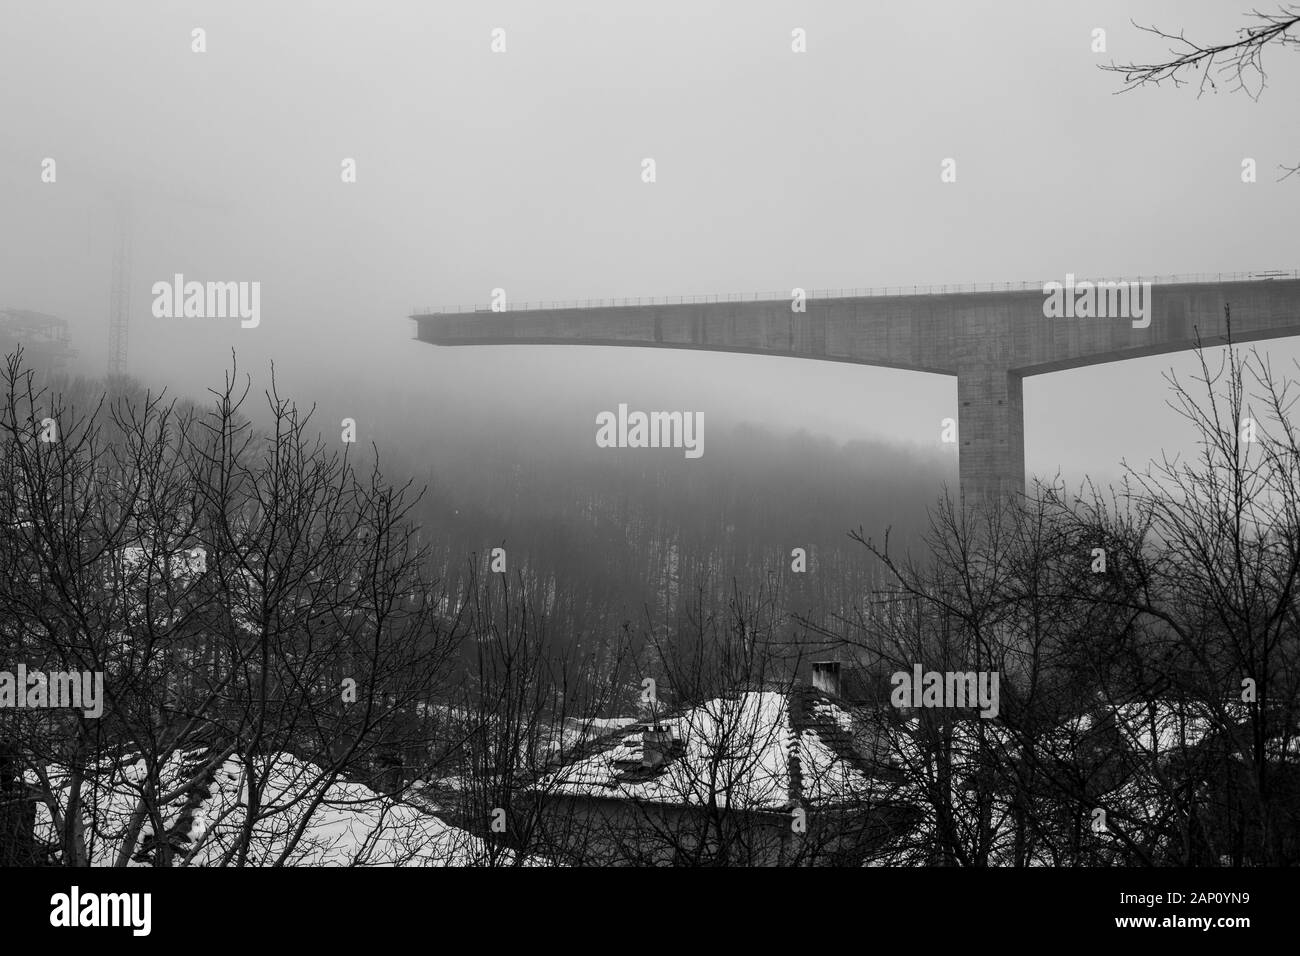 Fitta nebbia invernale e costruzione di ponti in cemento ad alta velocità nella città di Gabrovo, nel nord della Bulgaria, in Europa. Parte della circonvallazione, sponsorizzata dall'Unione europea. Immagine in bianco e nero Foto Stock